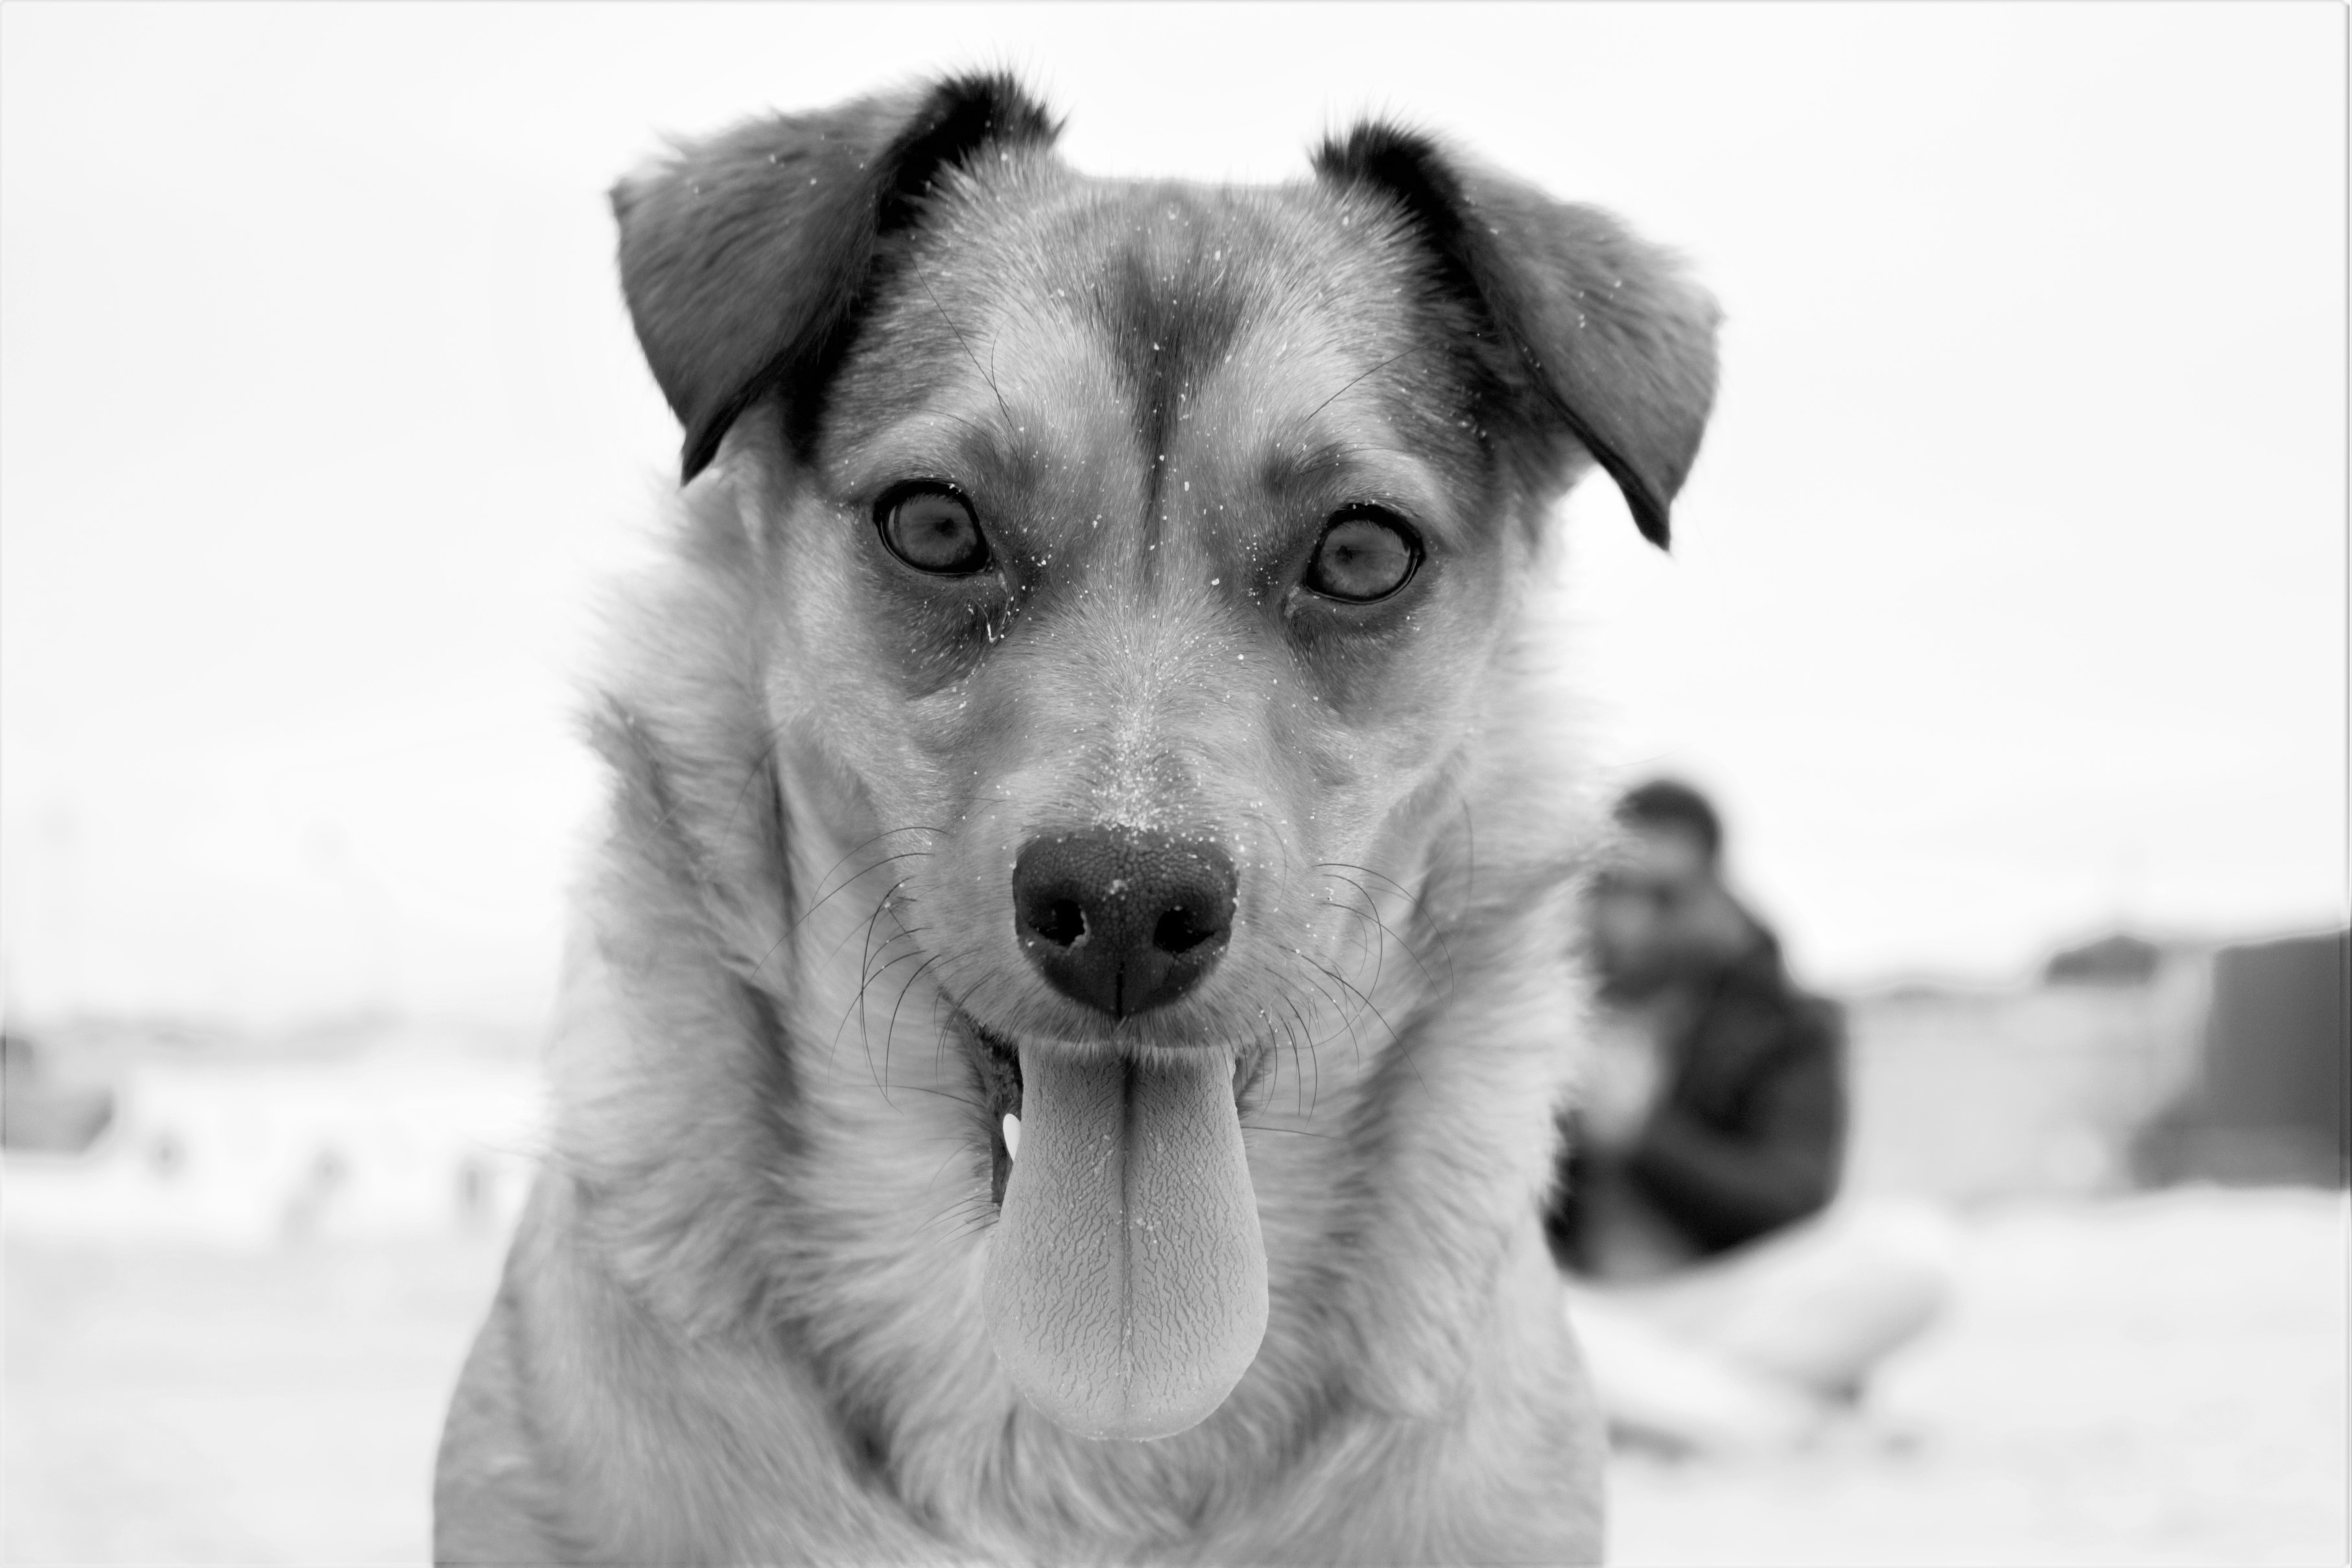 greyscale photo of long coat dog